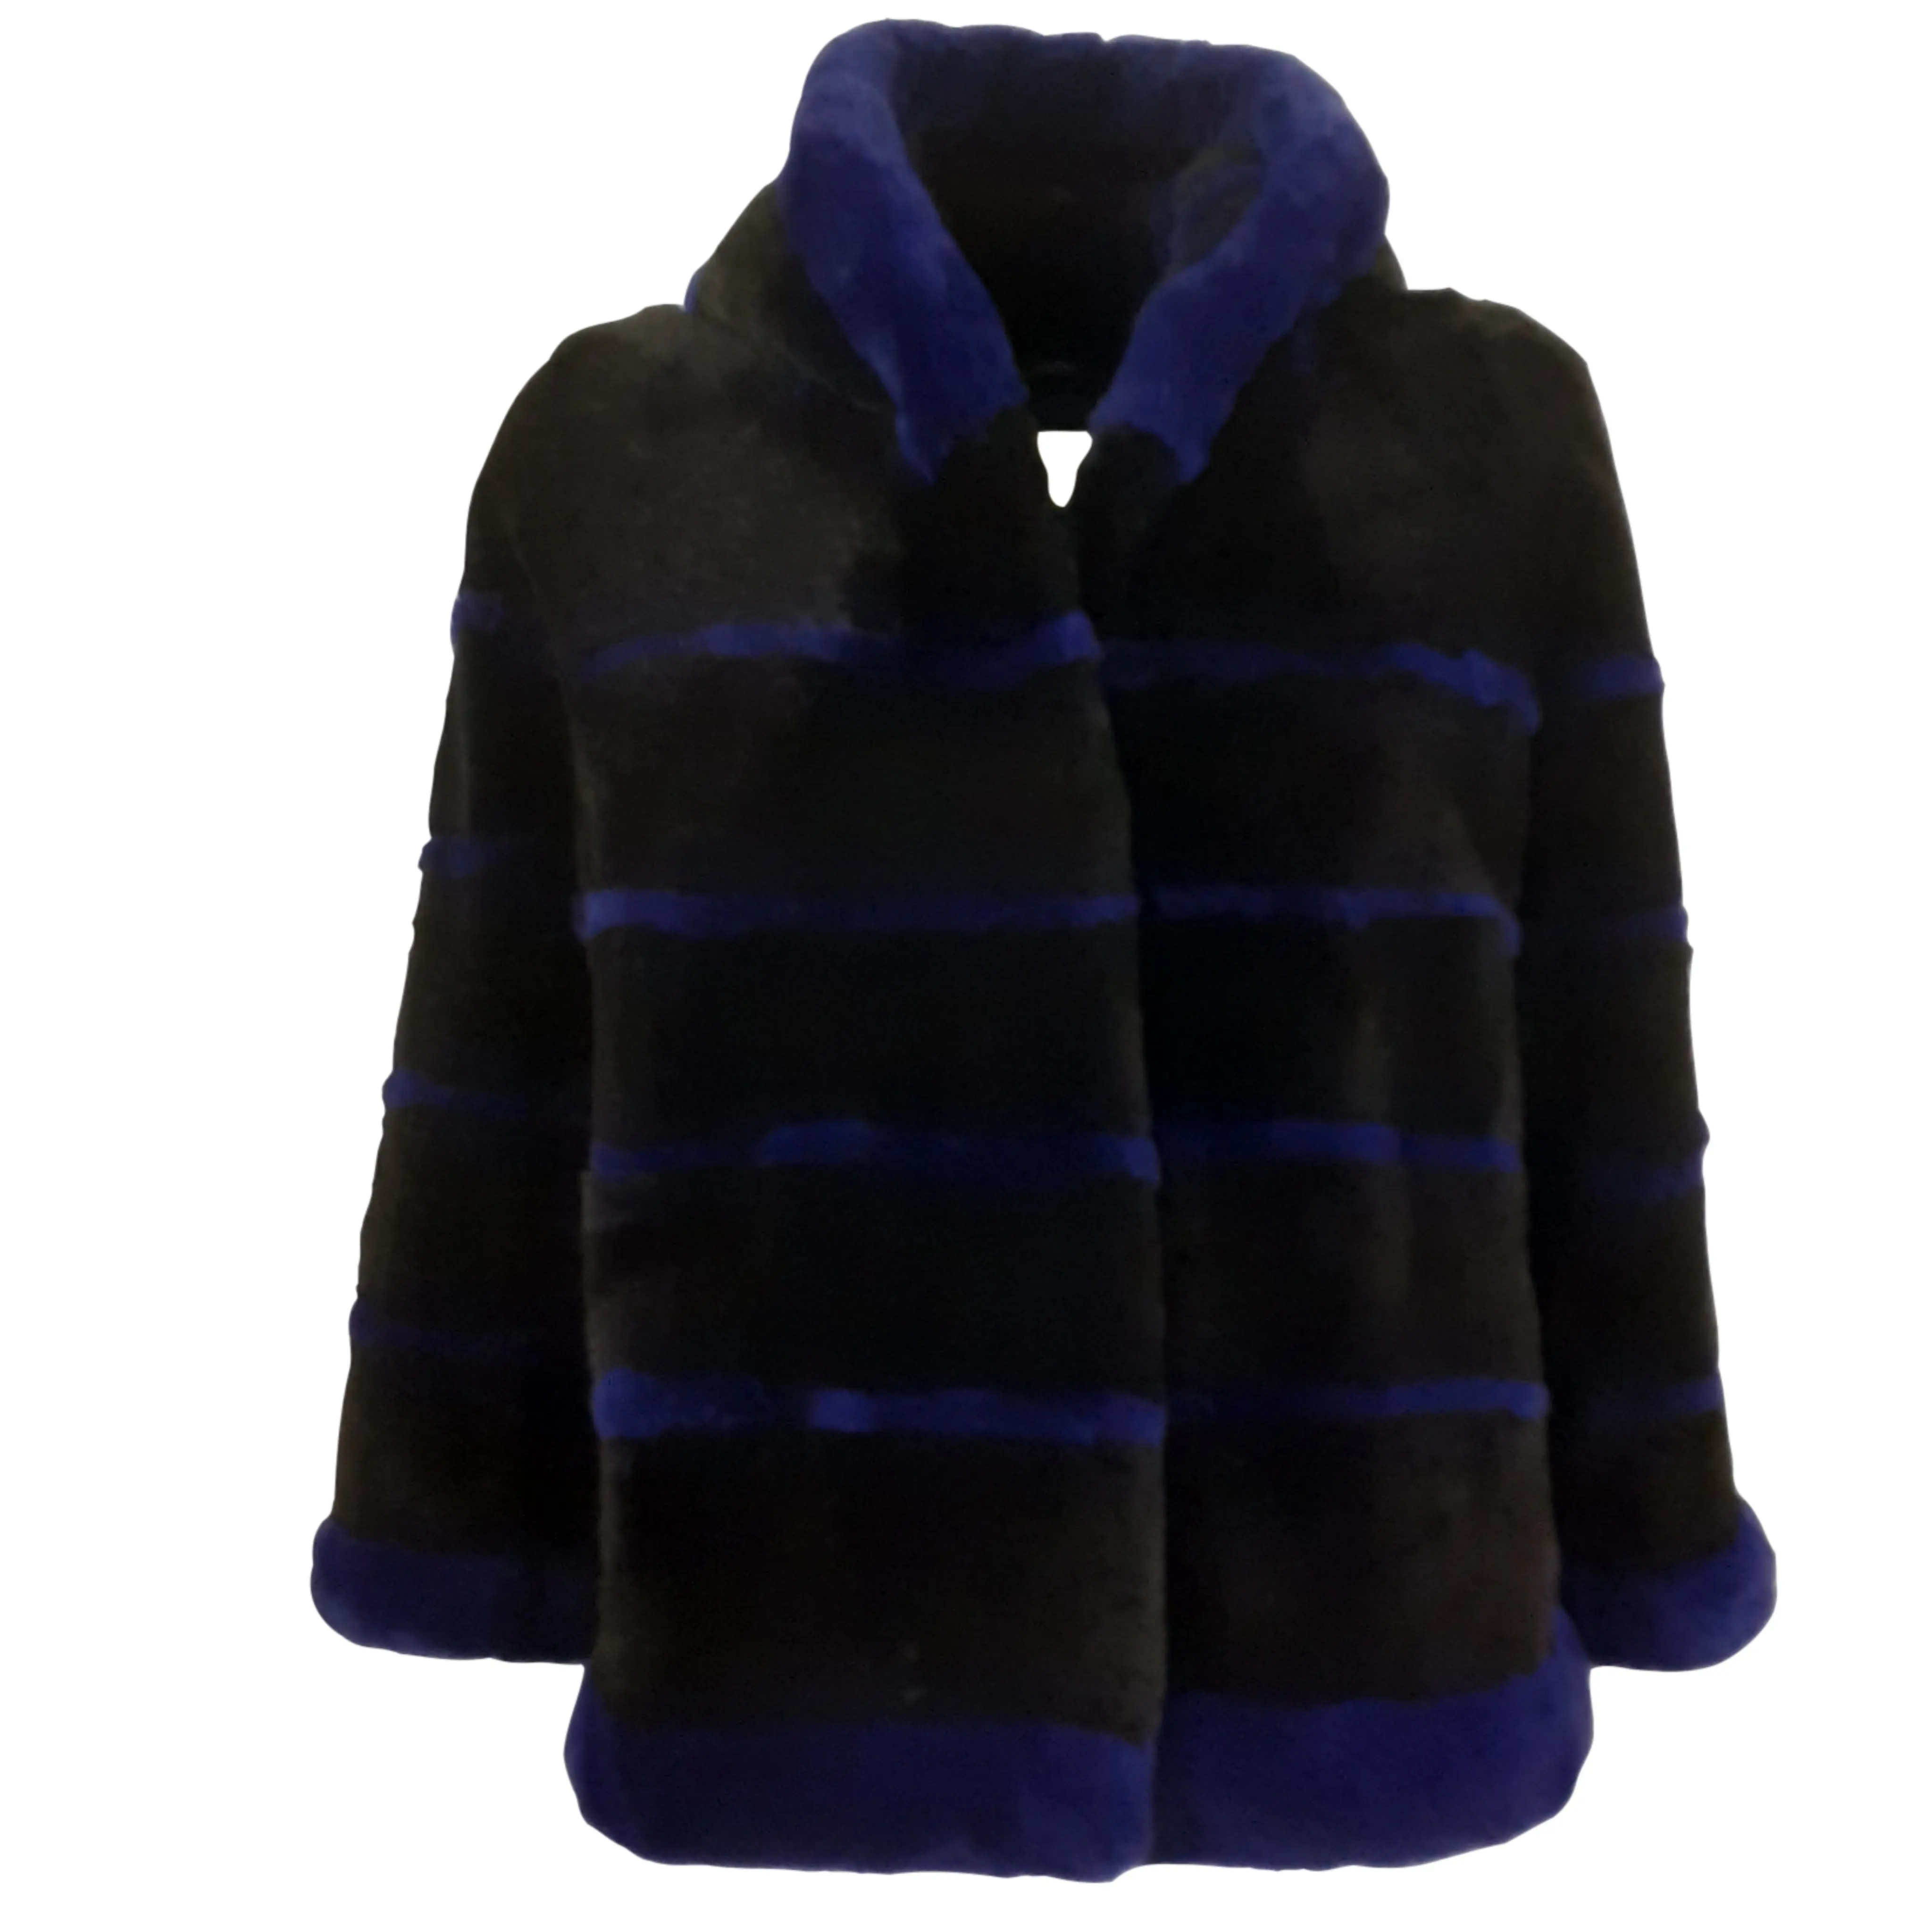 Siyah ve mavi traş vizon kürk ceket yumuşak sıcak İtalya'da yapılan özel koleksiyon 2023